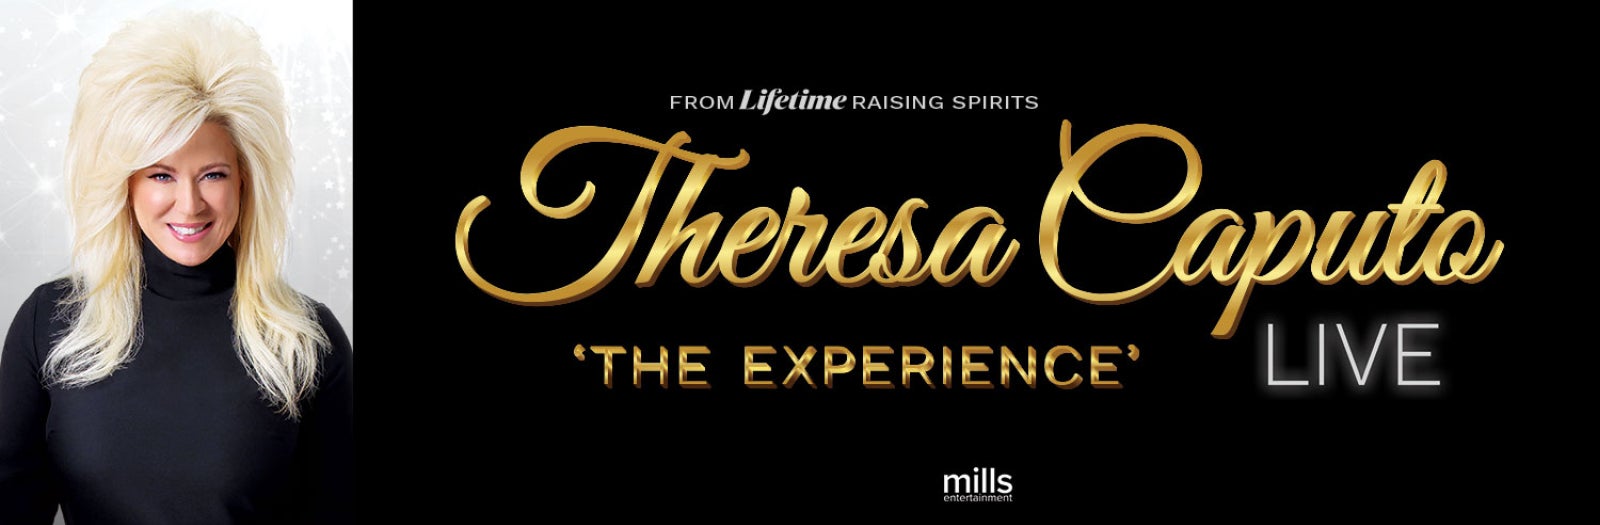 Theresa Caputo Live: The Experience